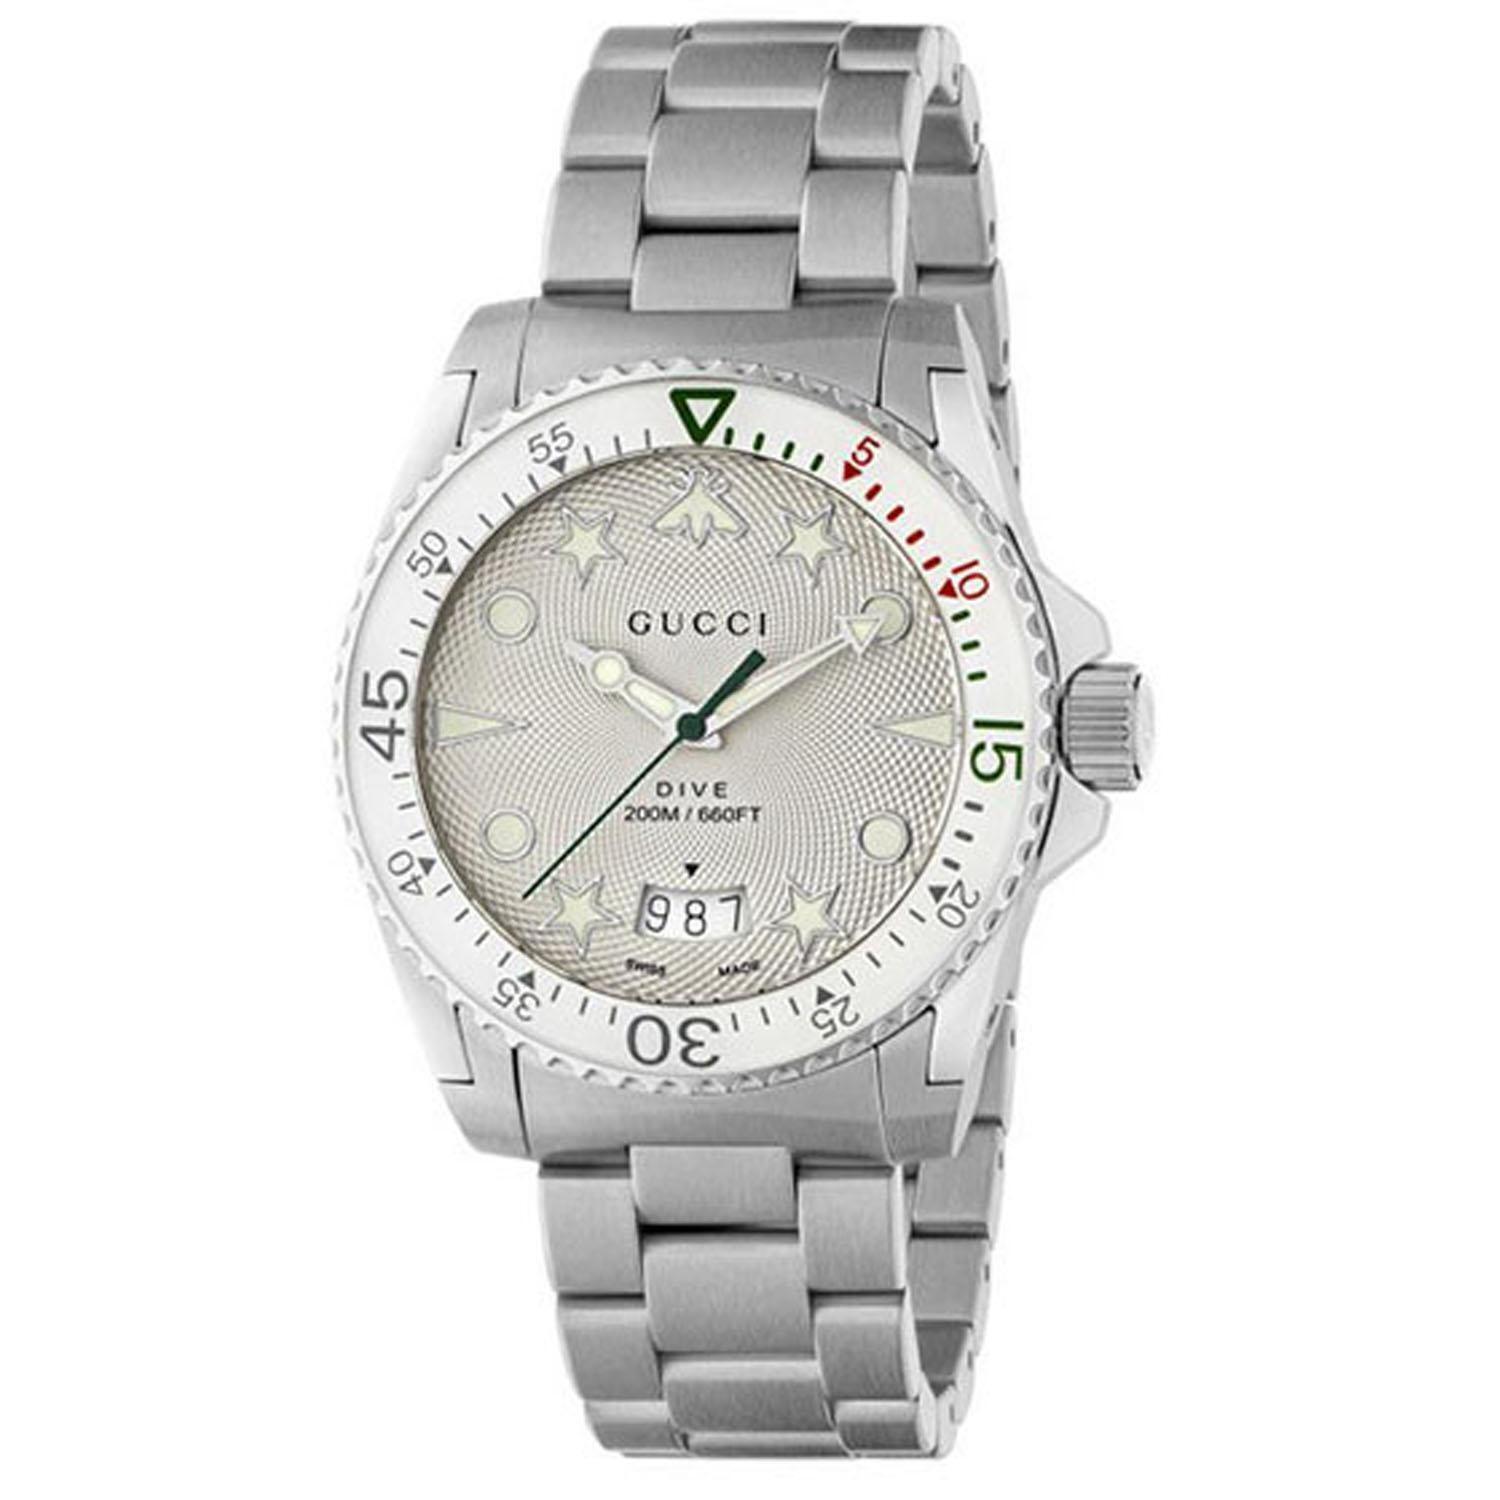 Gucci Men's Dive Silver Dial Watch - YA136336